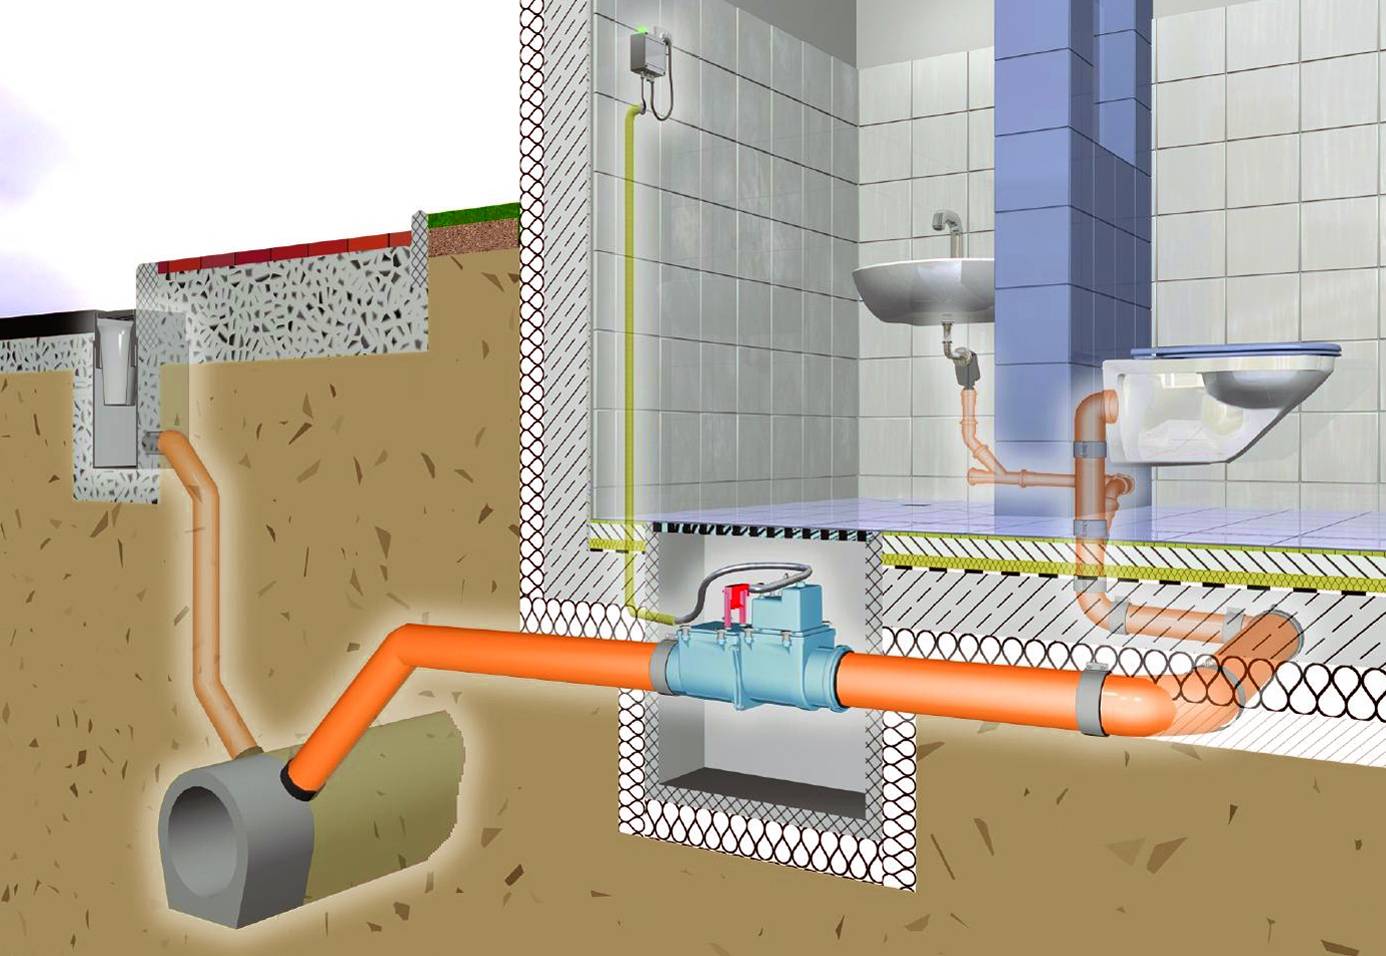 Как проложить канализационные трубы в земле